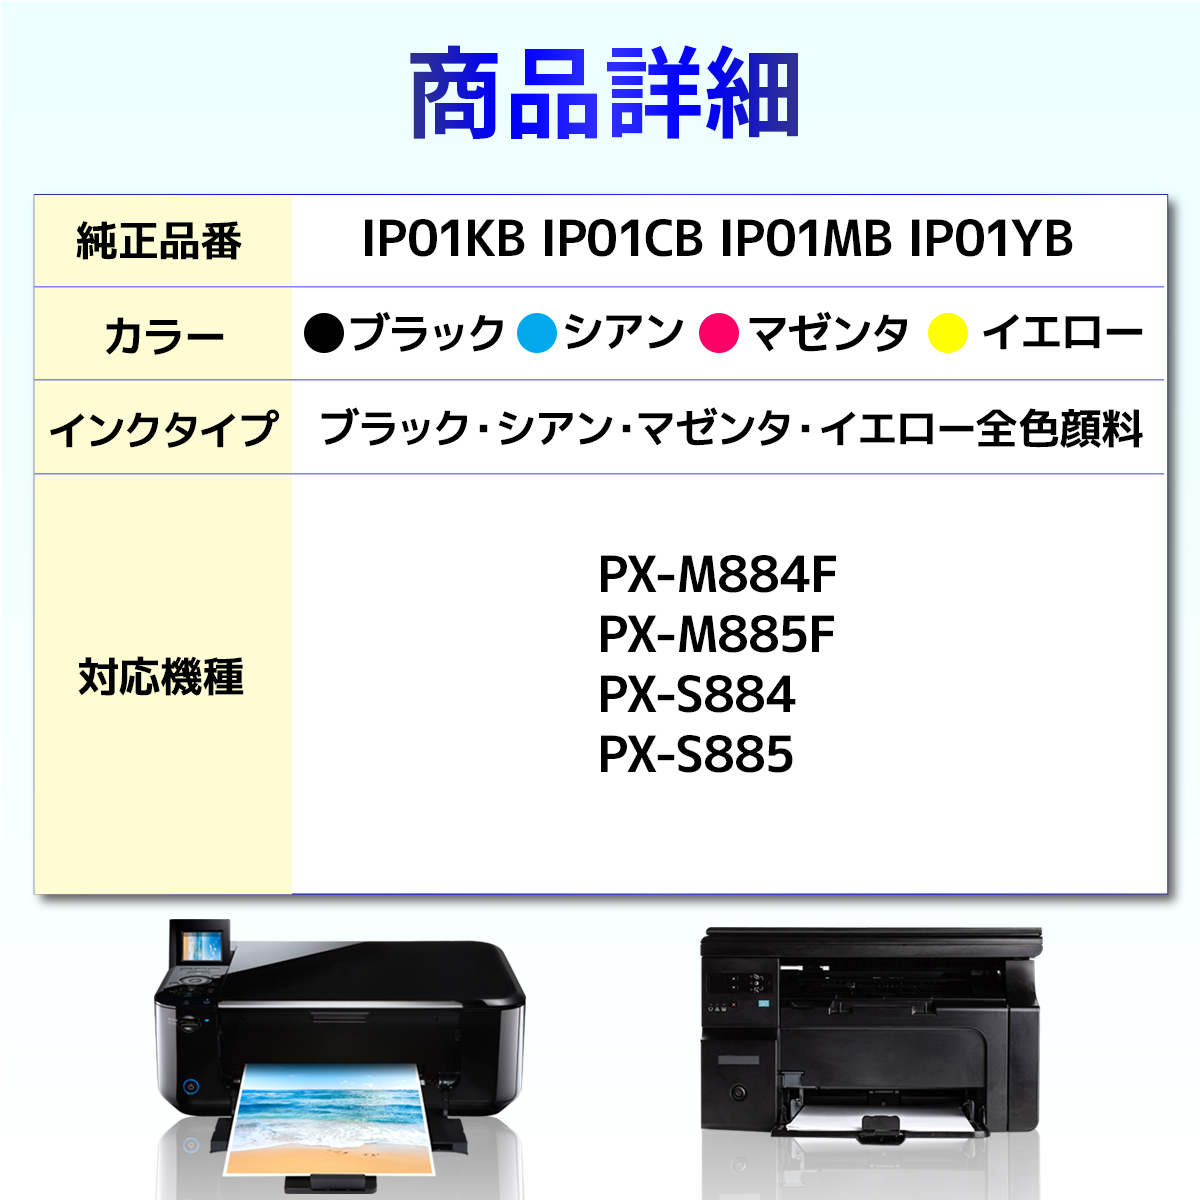 IP01　IP01KB　IP01CB　互換インクパック　PX-M885F　EPSON　5個セット　IP01YB　PX-S884　PX-M884F　PX-S885　IP01MB　エプソン